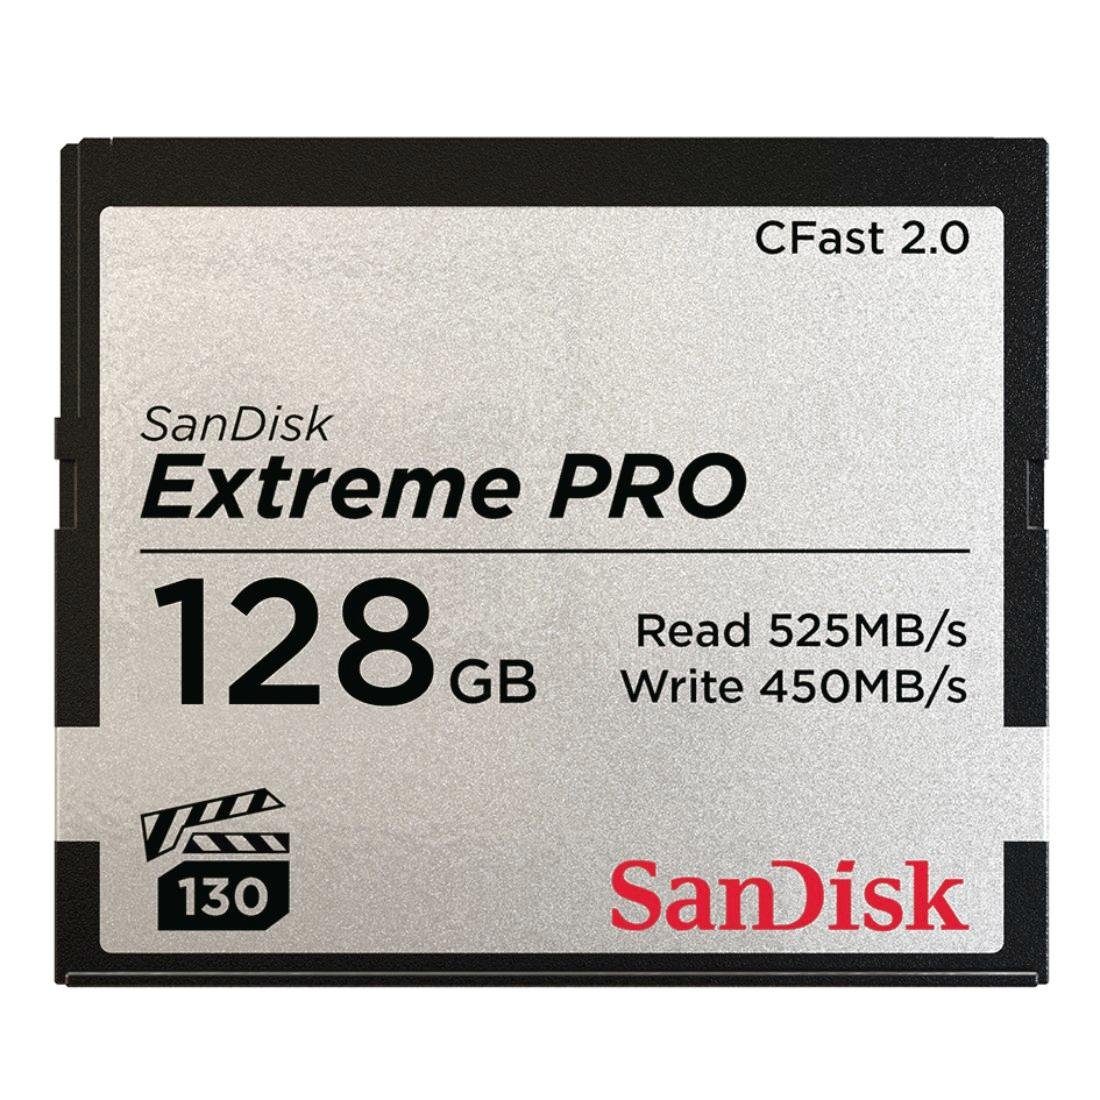 Sandisk CFast Extreme Pro 2.0 Speicherkarte (128 GB, 525 MB/s Lesegeschwindigkeit)